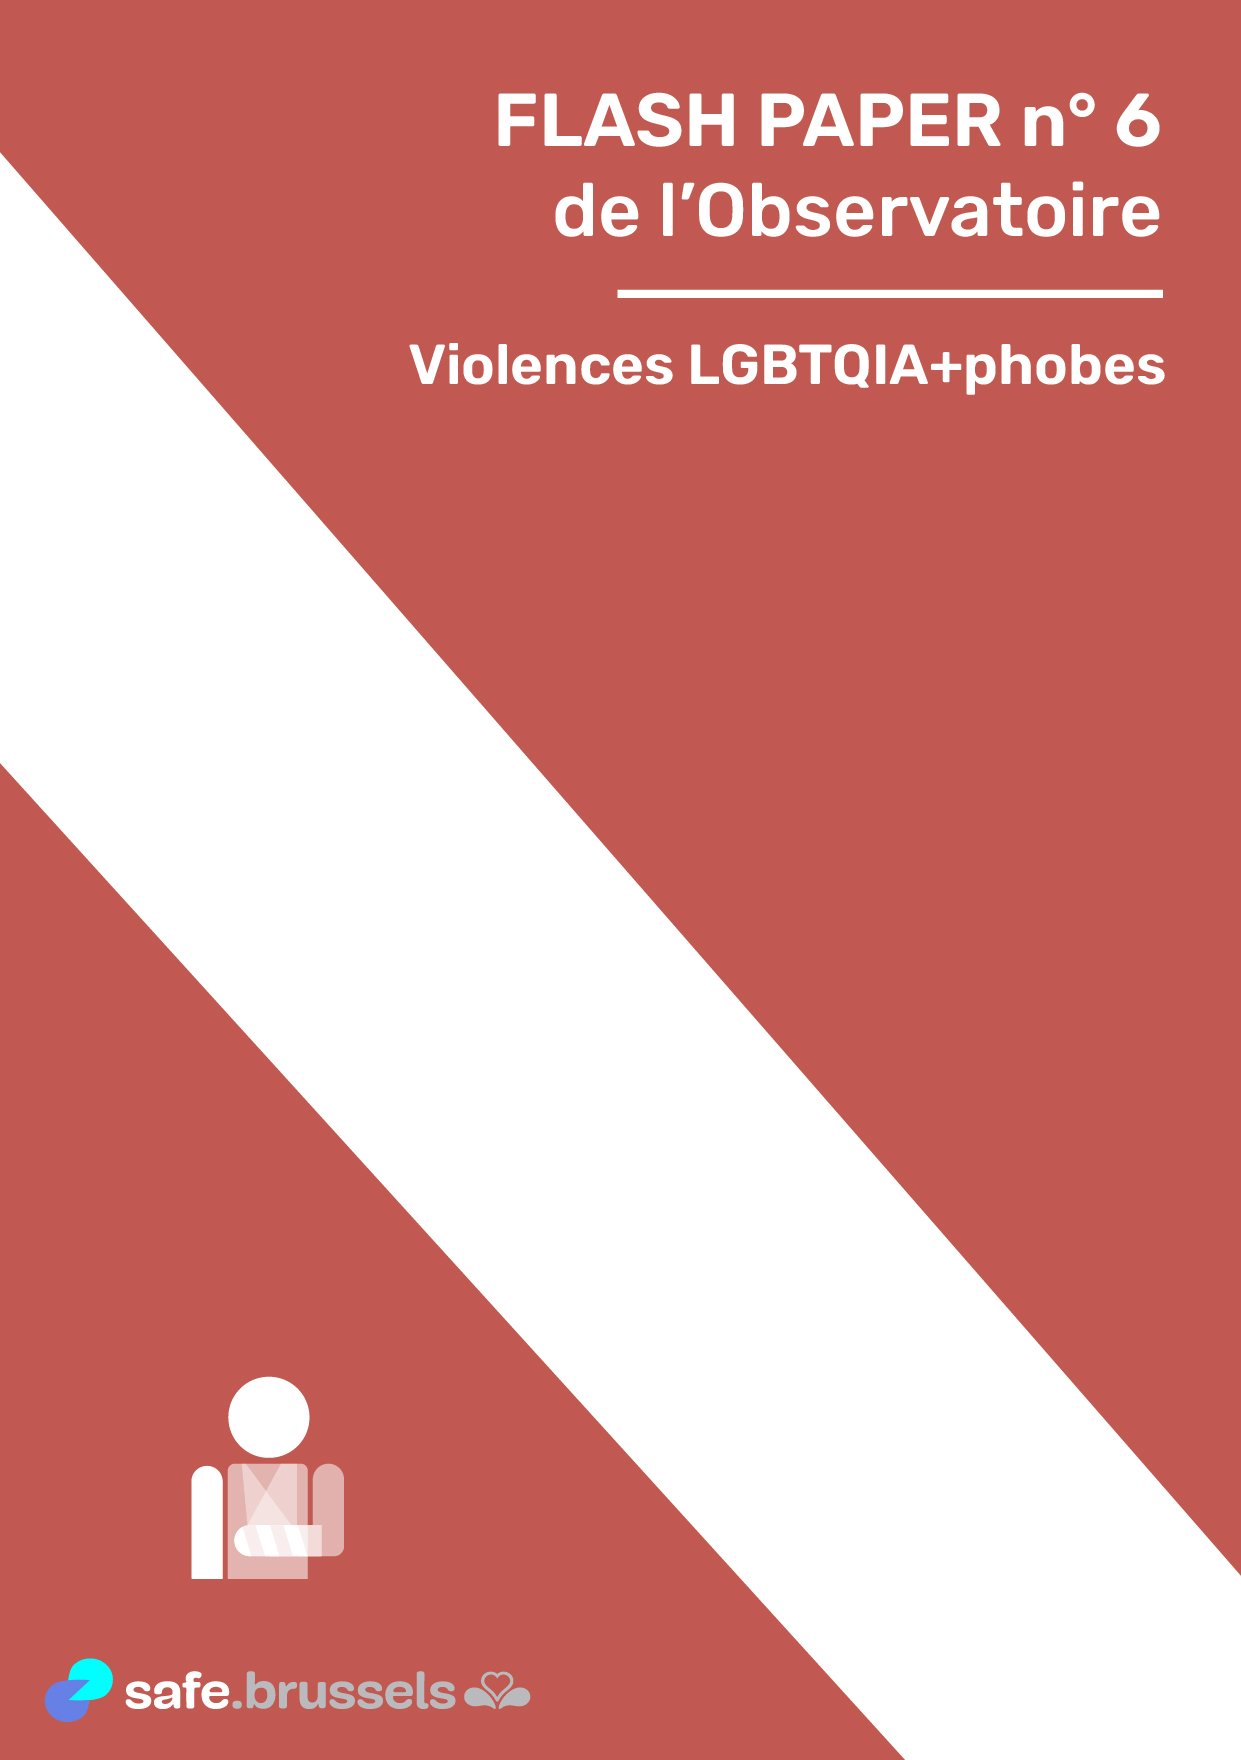 Violences LGBTQIA+phobes : état des lieux de la situation en Région bruxelloise